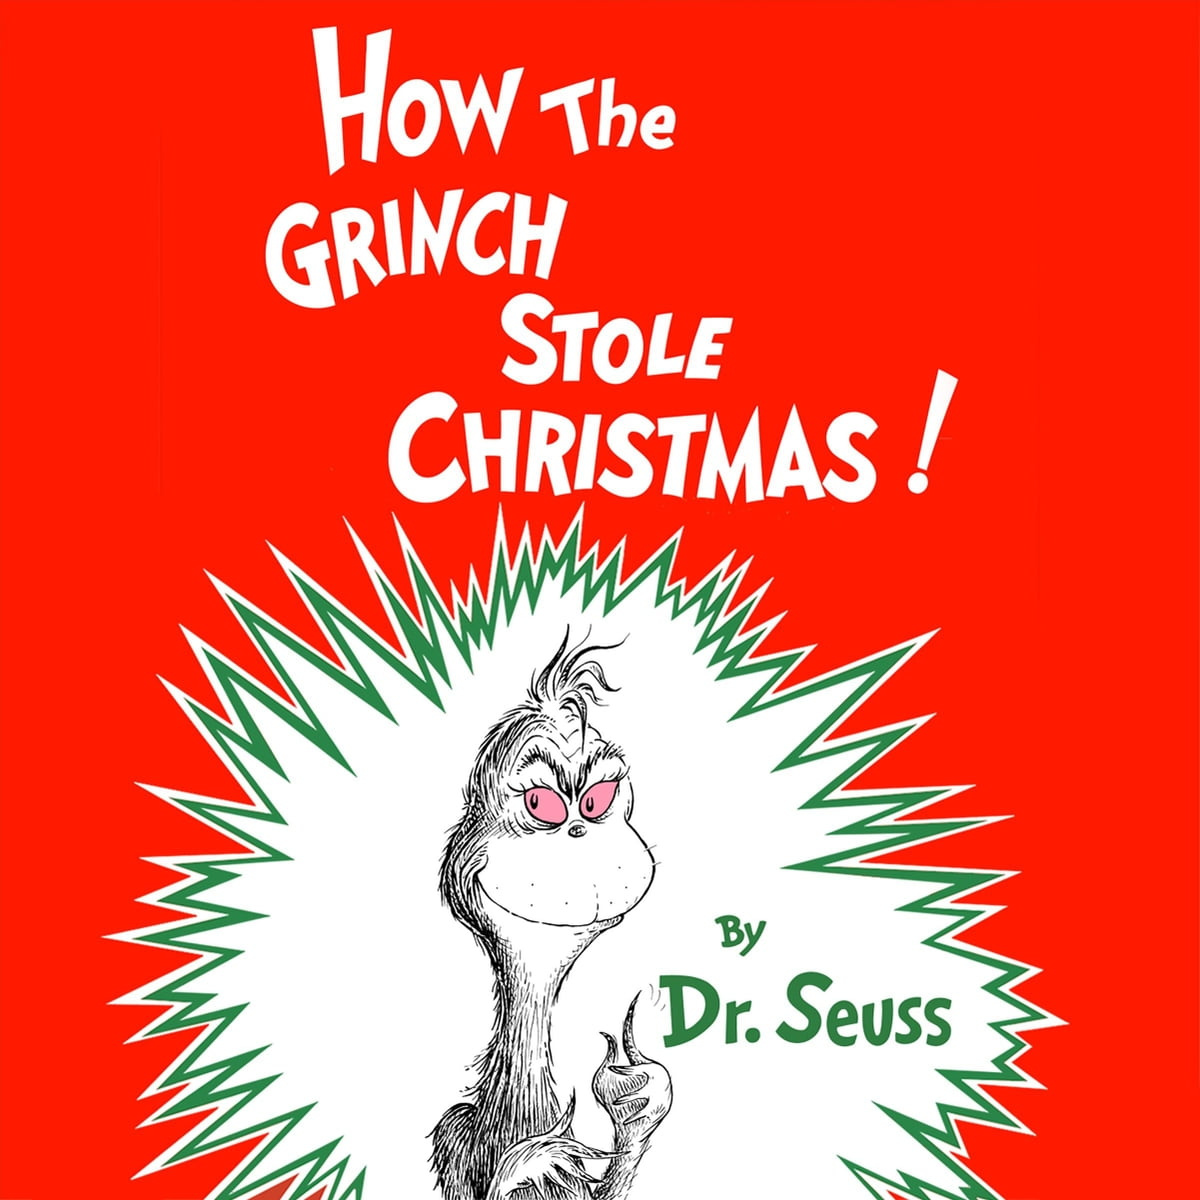 # 世界上最討厭 12 月的人，卻是大家聖誕節的最愛：從精品、球鞋、到名人都喜歡的「鬼靈精」Grinch 2